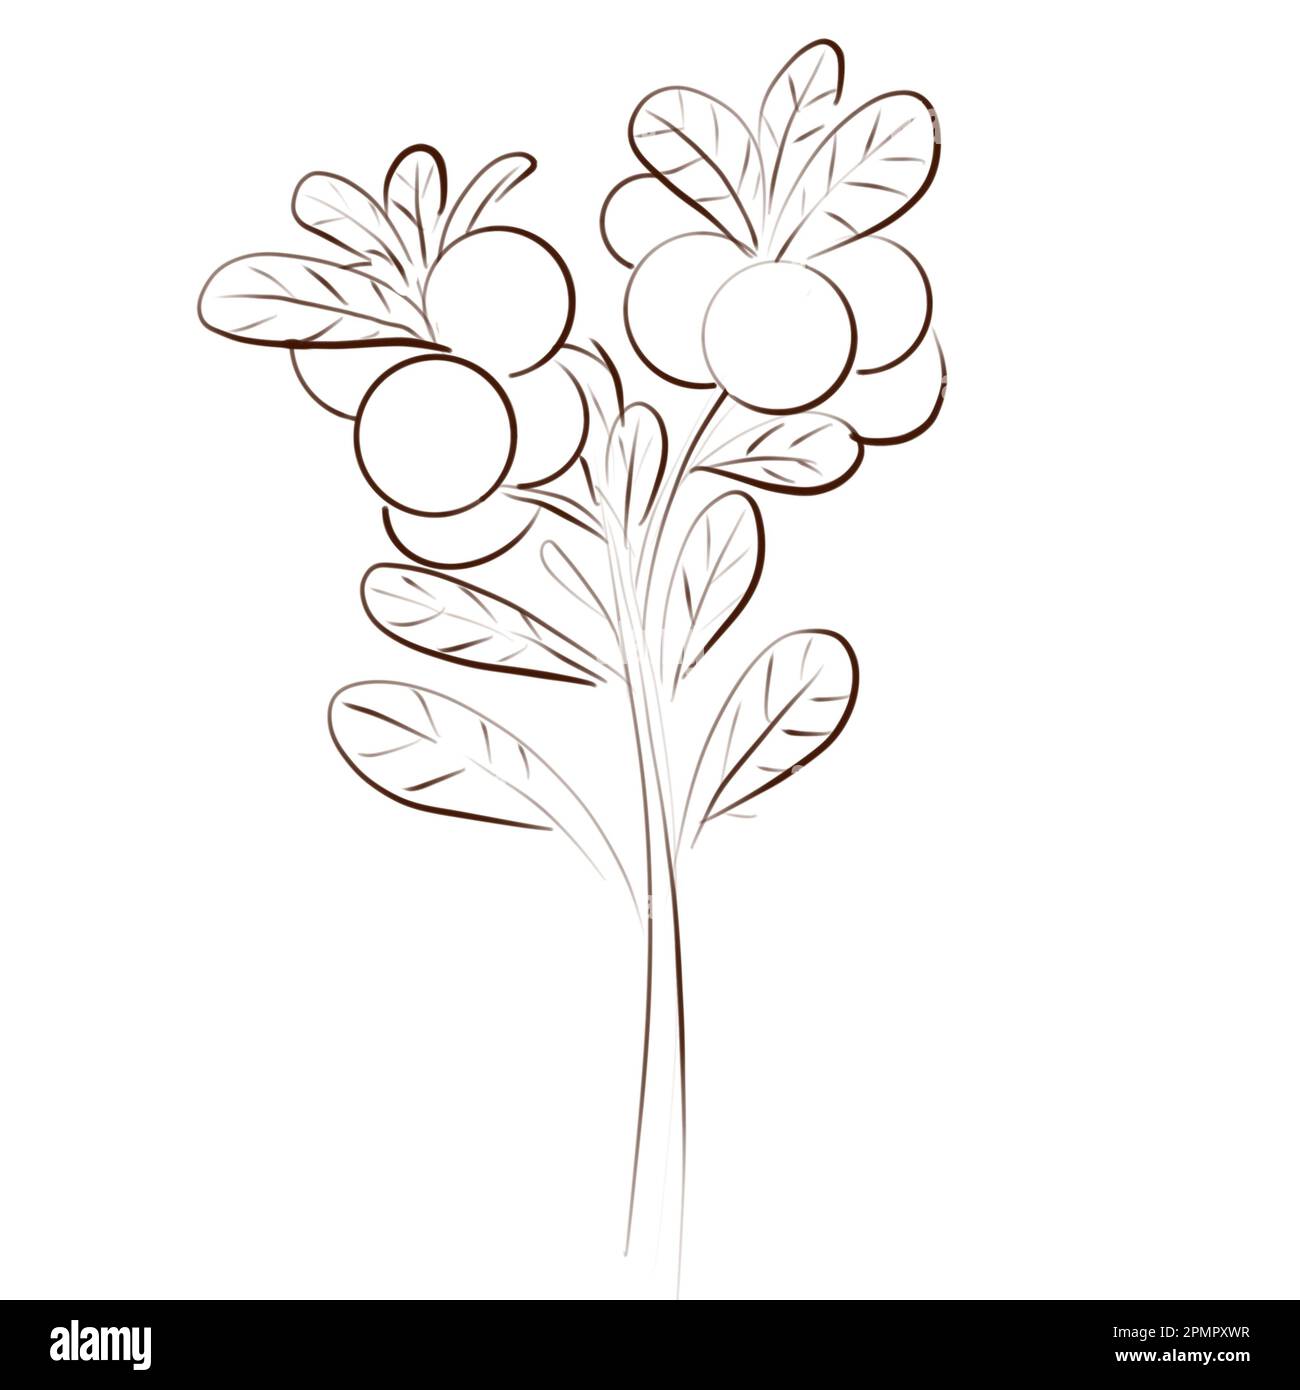 Branches de cowberry dessinées à la main isolées sur un fond blanc. Dessin d'une plante forestière sauvage avec des baies et des feuilles. Banque D'Images